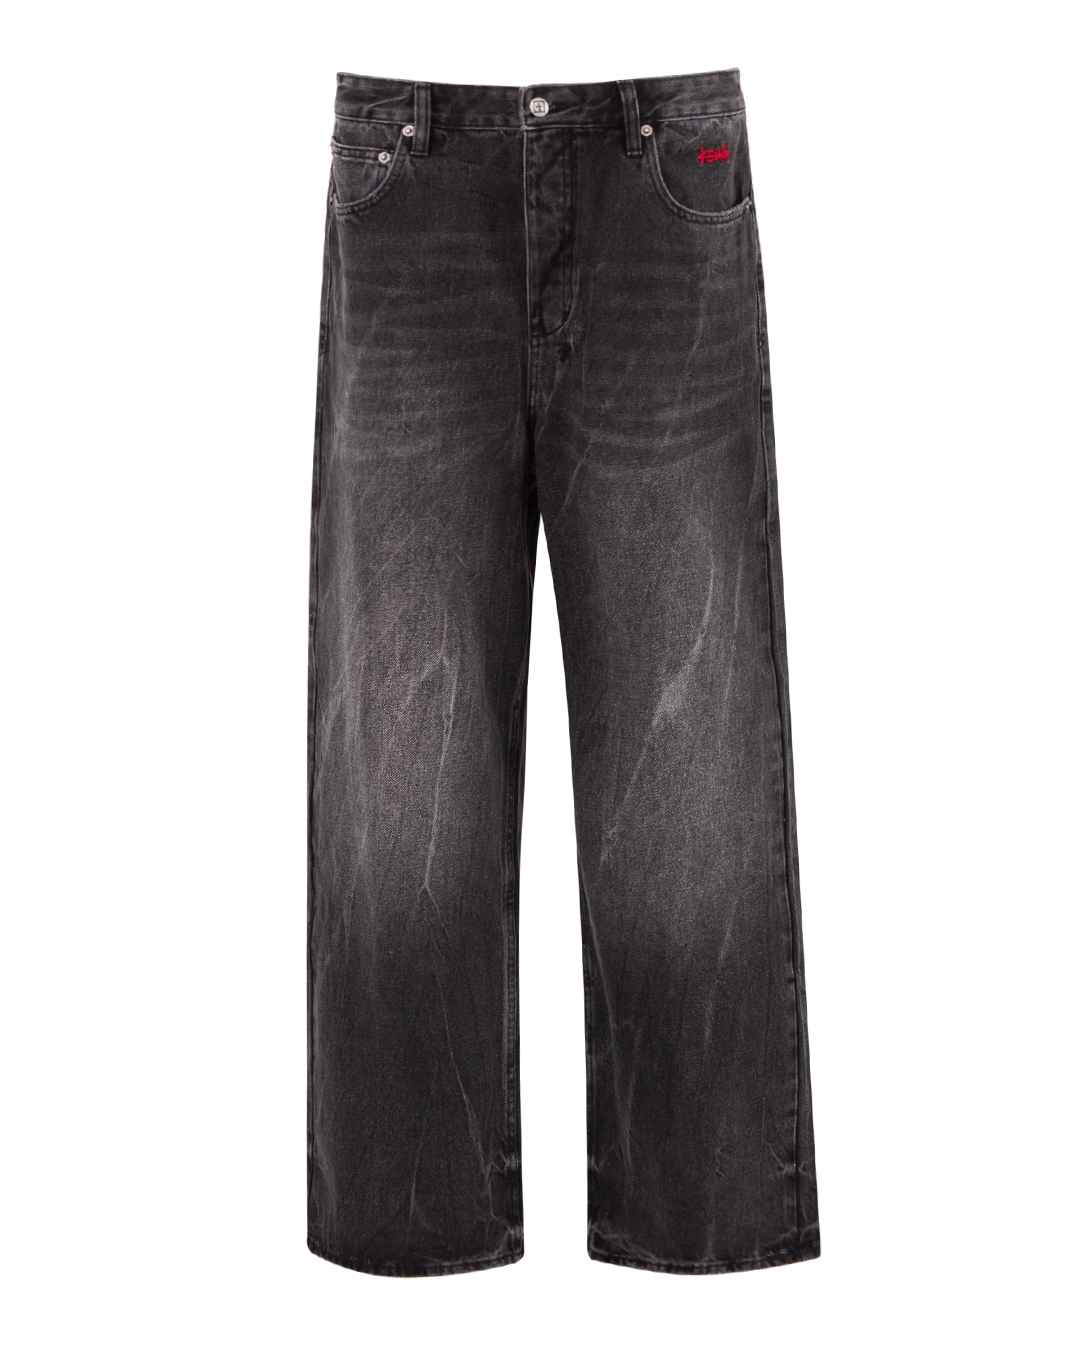 джинсы KSUBI MSP24DJ031 черный 36, размер 36 - фото 1